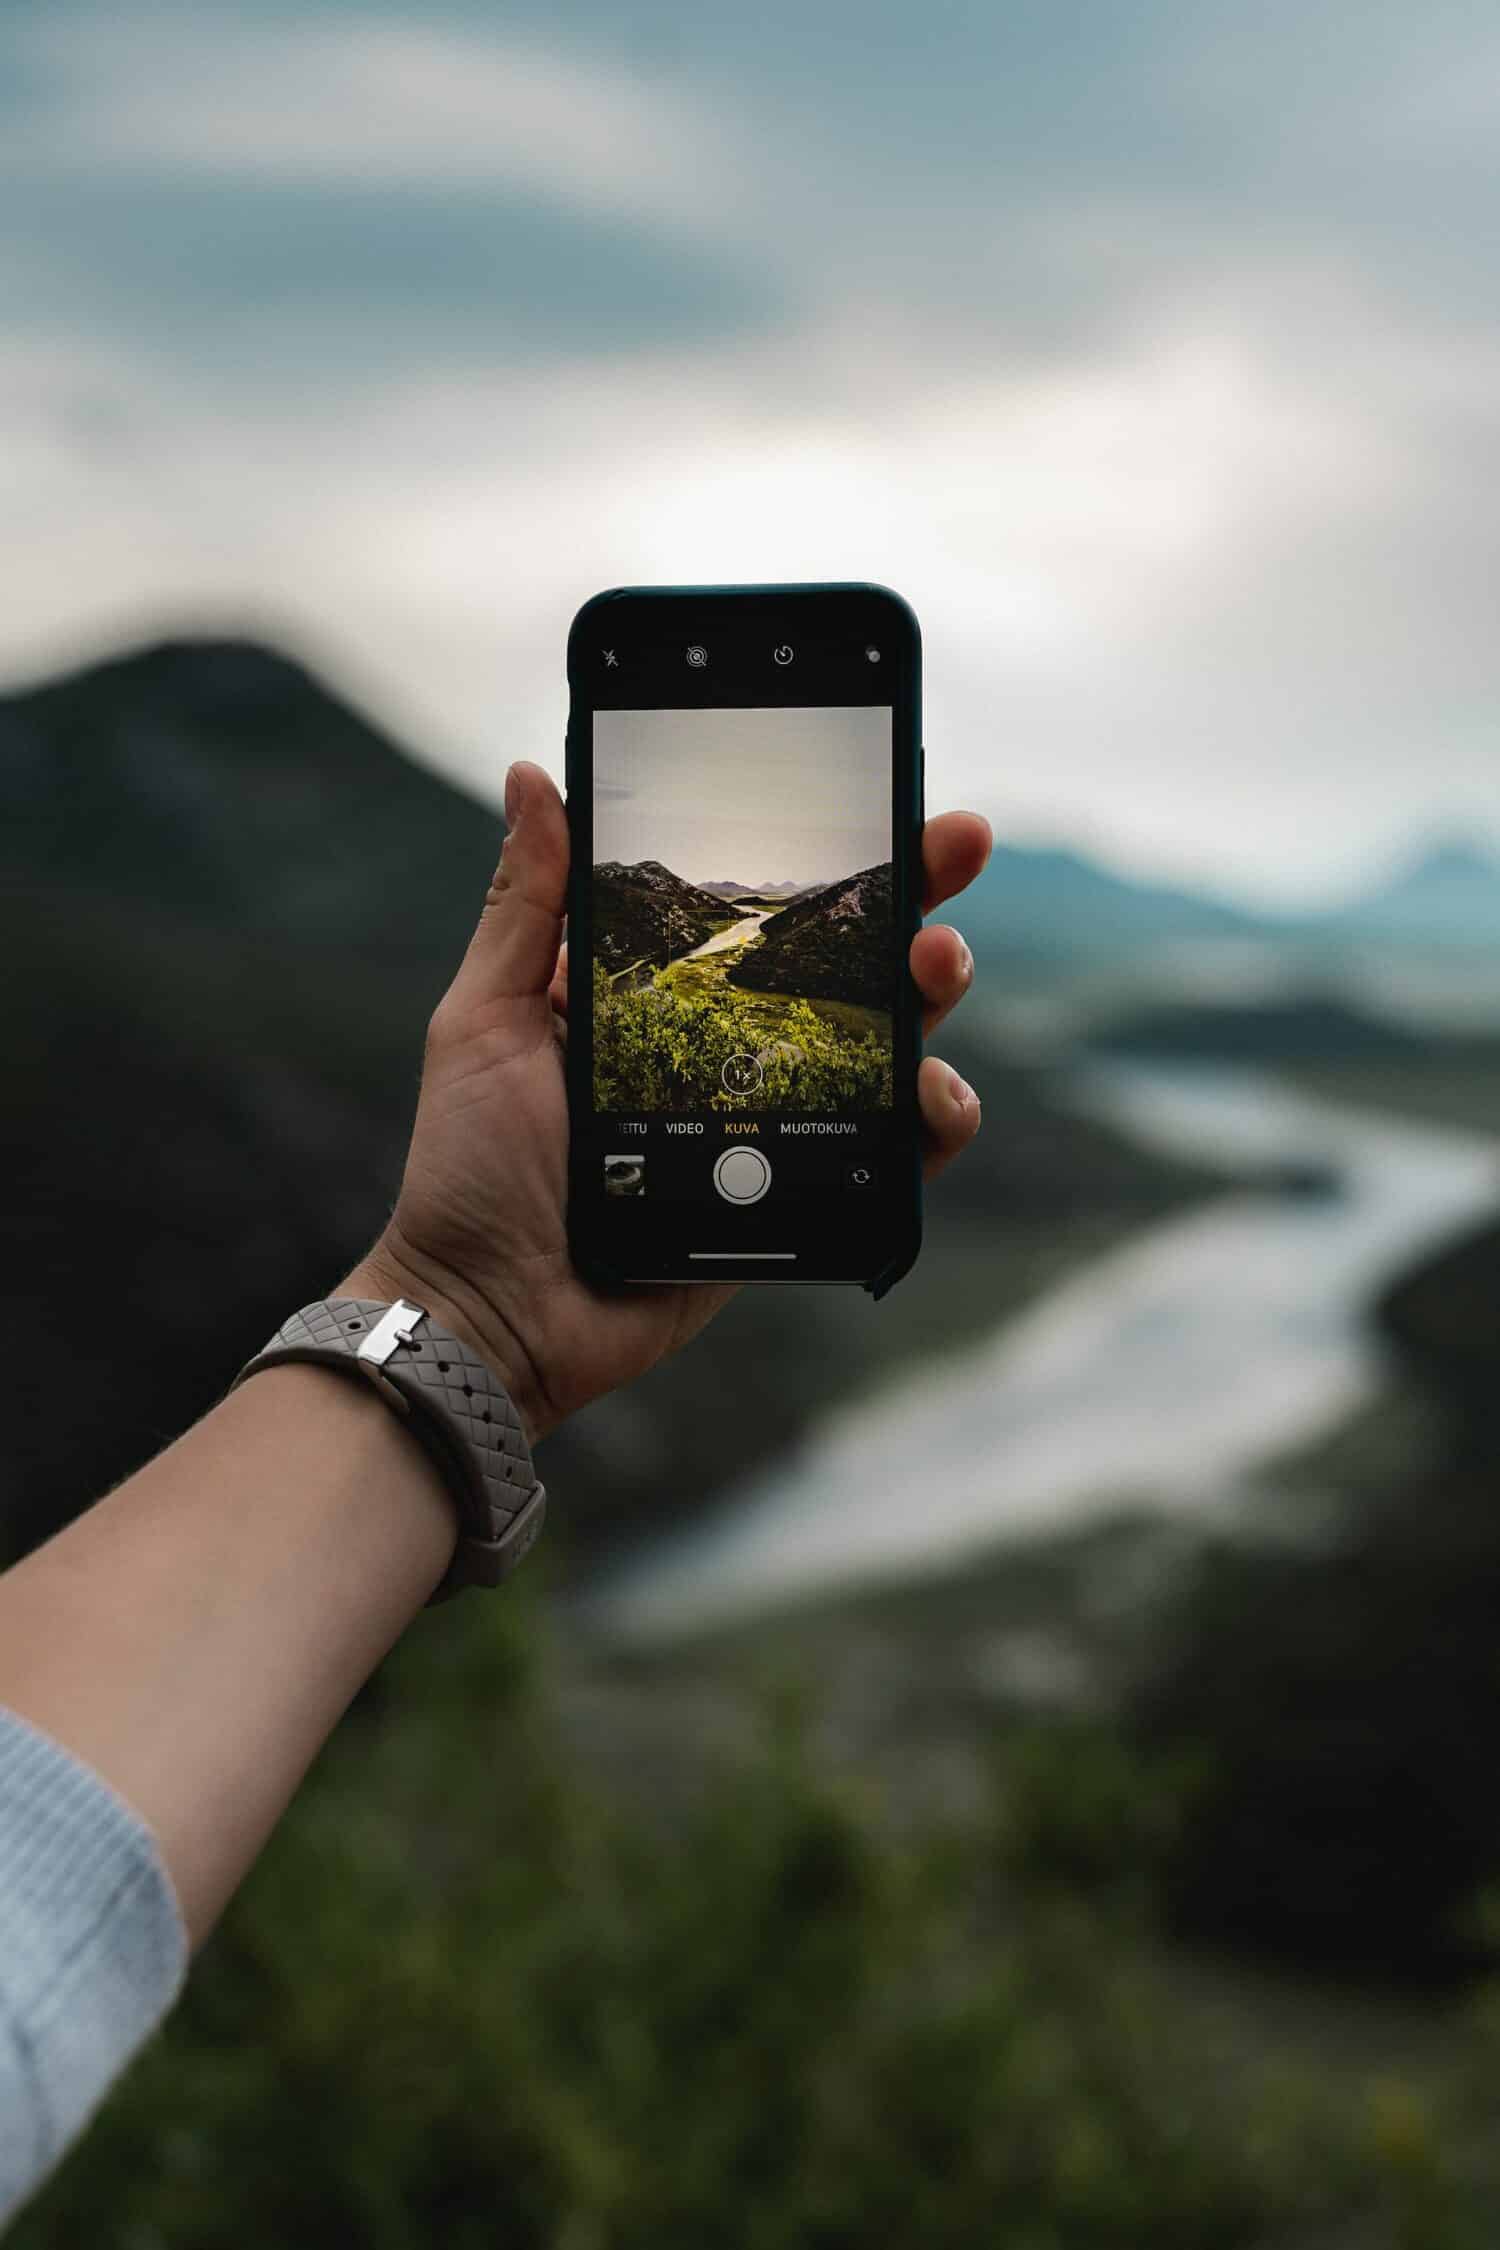 Uma mão branca com um relógio segurando um celular na vertical enquanto fotografa uma rio passando por entre duas montanhas